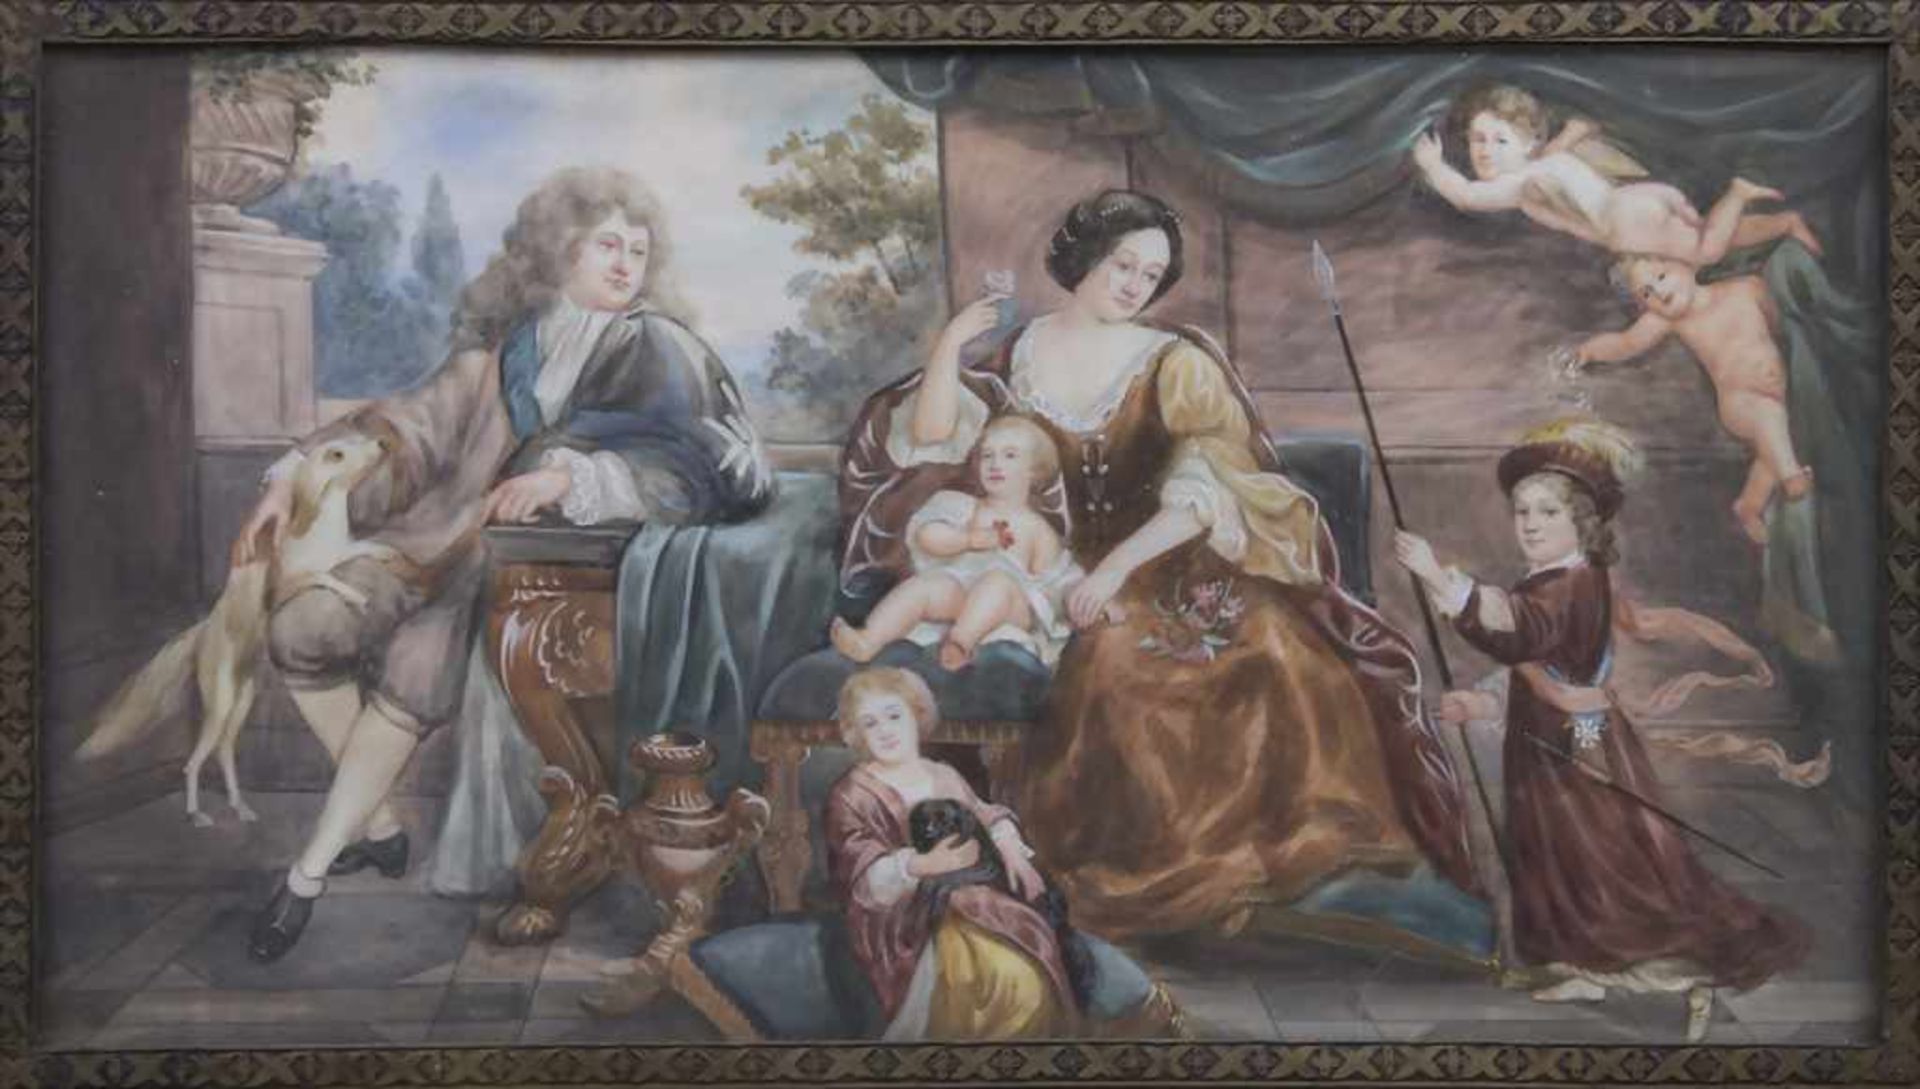 Miniatur Porträt einer wohlhabenden Familie im 18. Jh. / A miniature portrait of a wealthy family in